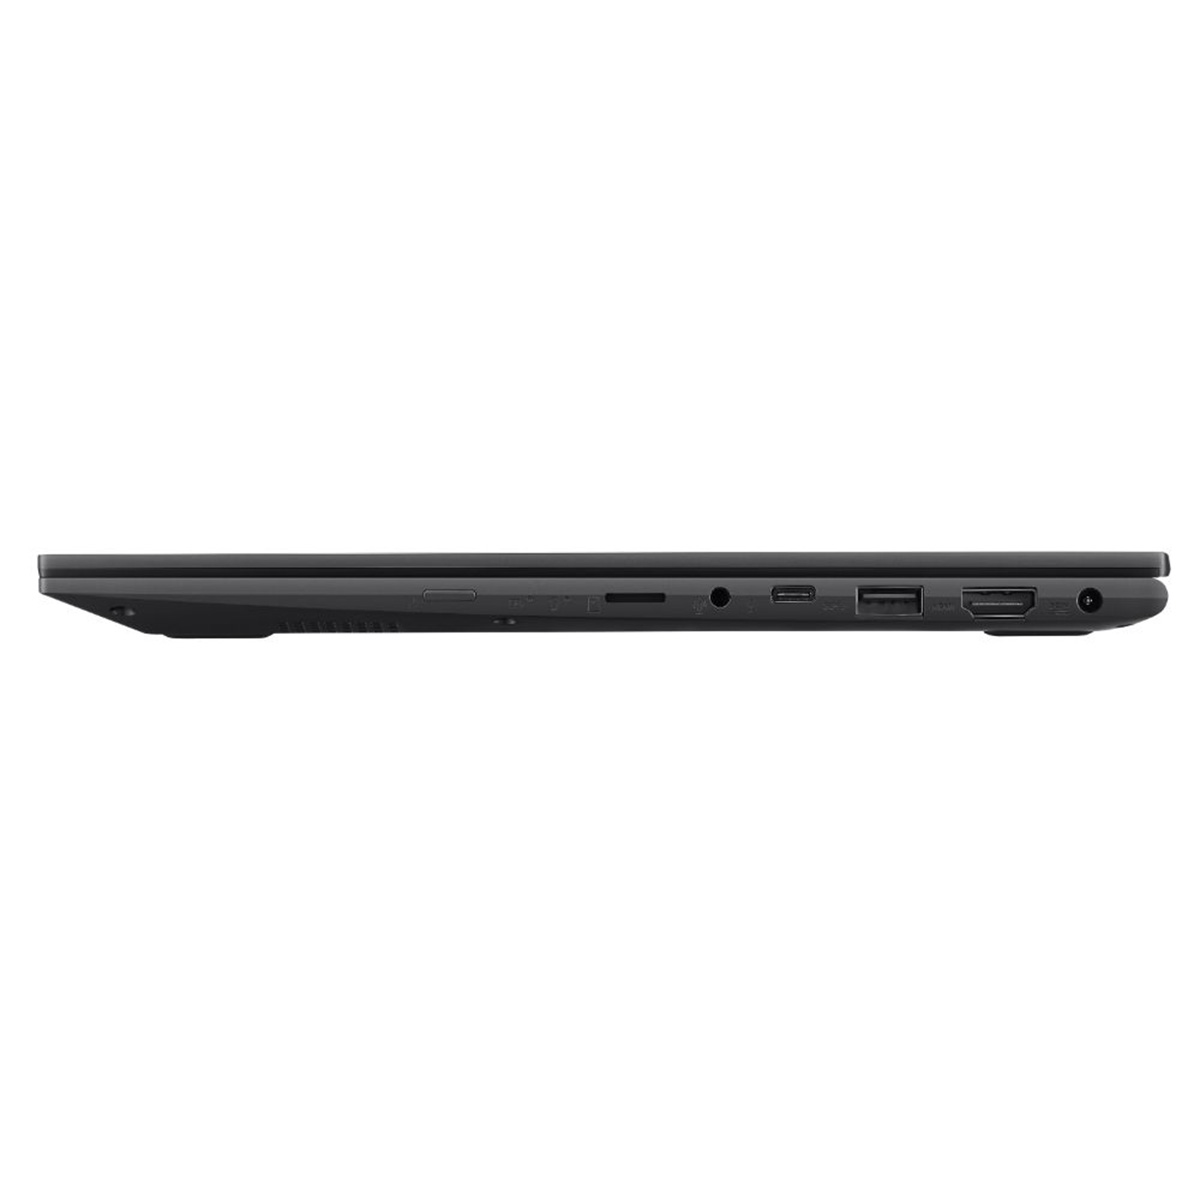 ノートPC VivoBook Flip 14 14型 Corei3 4GB SSD128GB インディーブラック